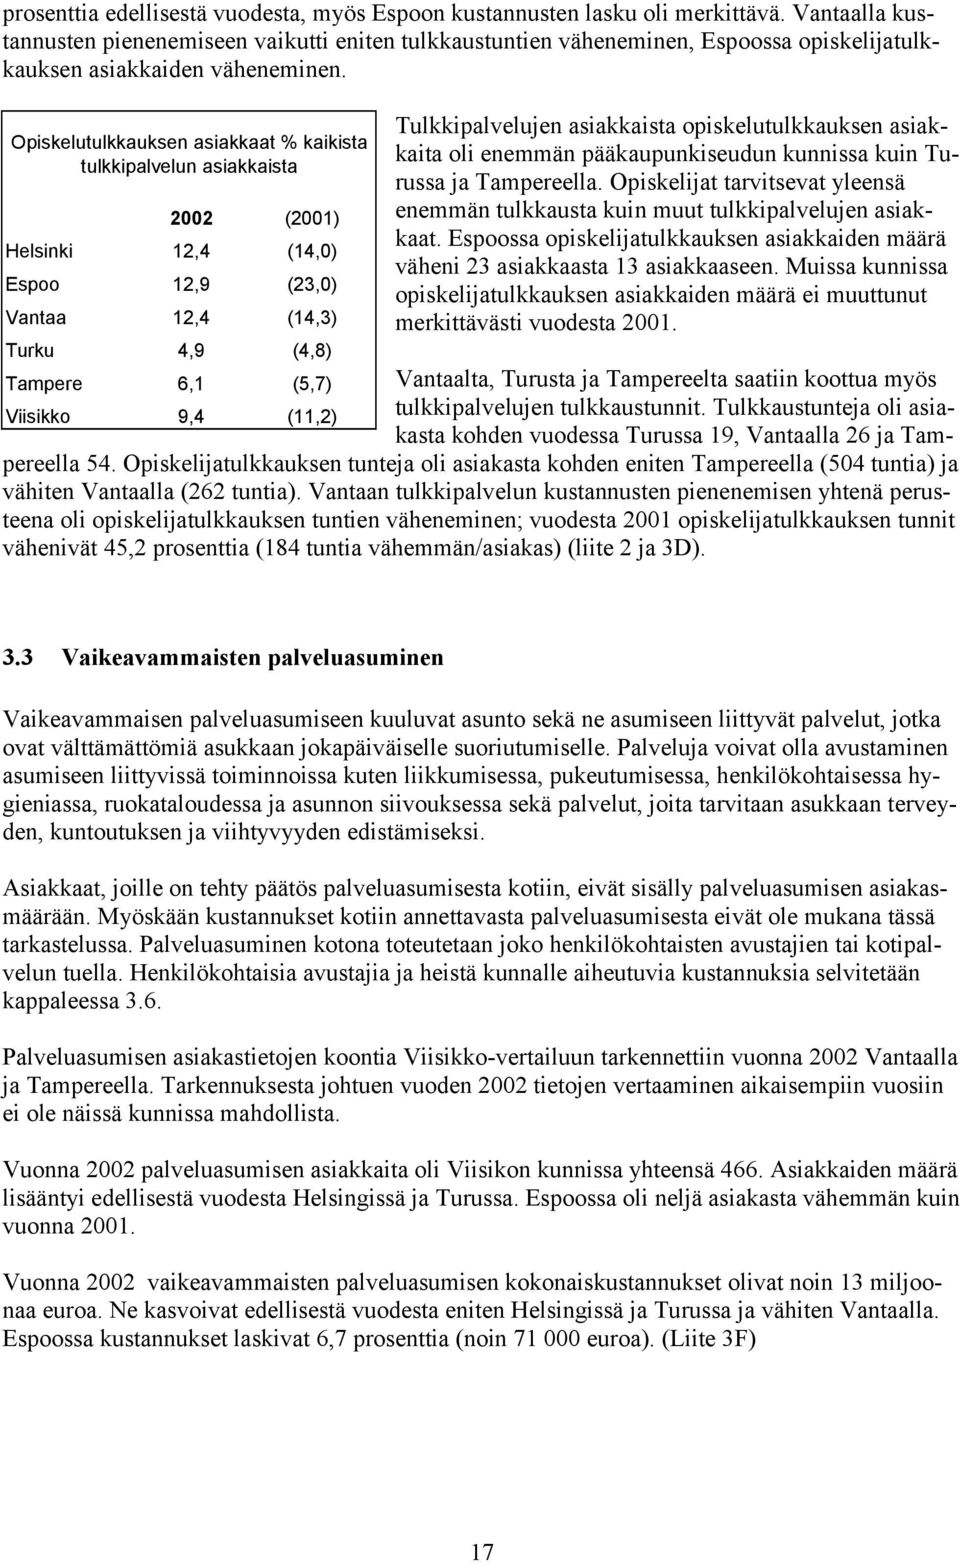 Opiskelutulkkauksen asiakkaat % kaikista tulkkipalvelun asiakkaista 2002 (2001) Helsinki 12,4 (14,0) Espoo 12,9 (23,0) Vantaa 12,4 (14,3) Turku 4,9 (4,8) Tulkkipalvelujen asiakkaista